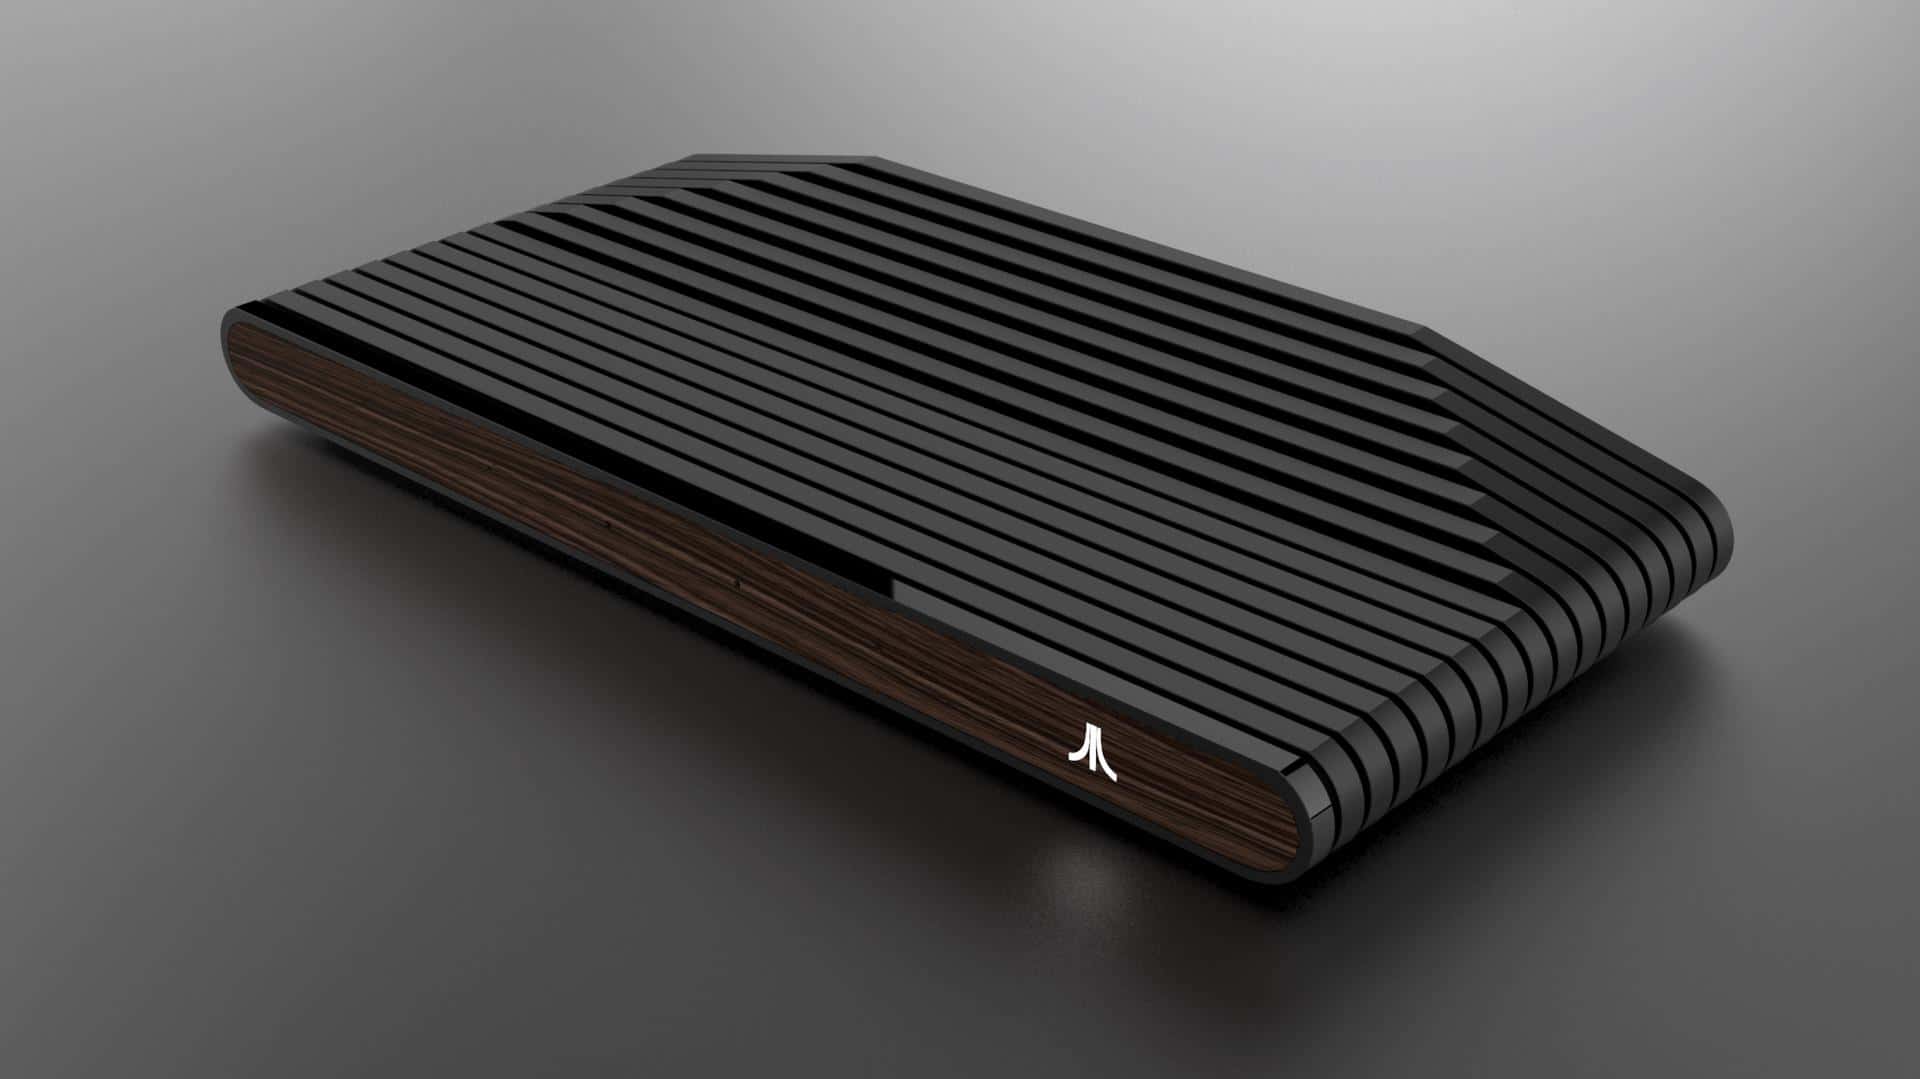 Conheça “Ataribox” o novo console da Atari que ganhou imagens e mais informações